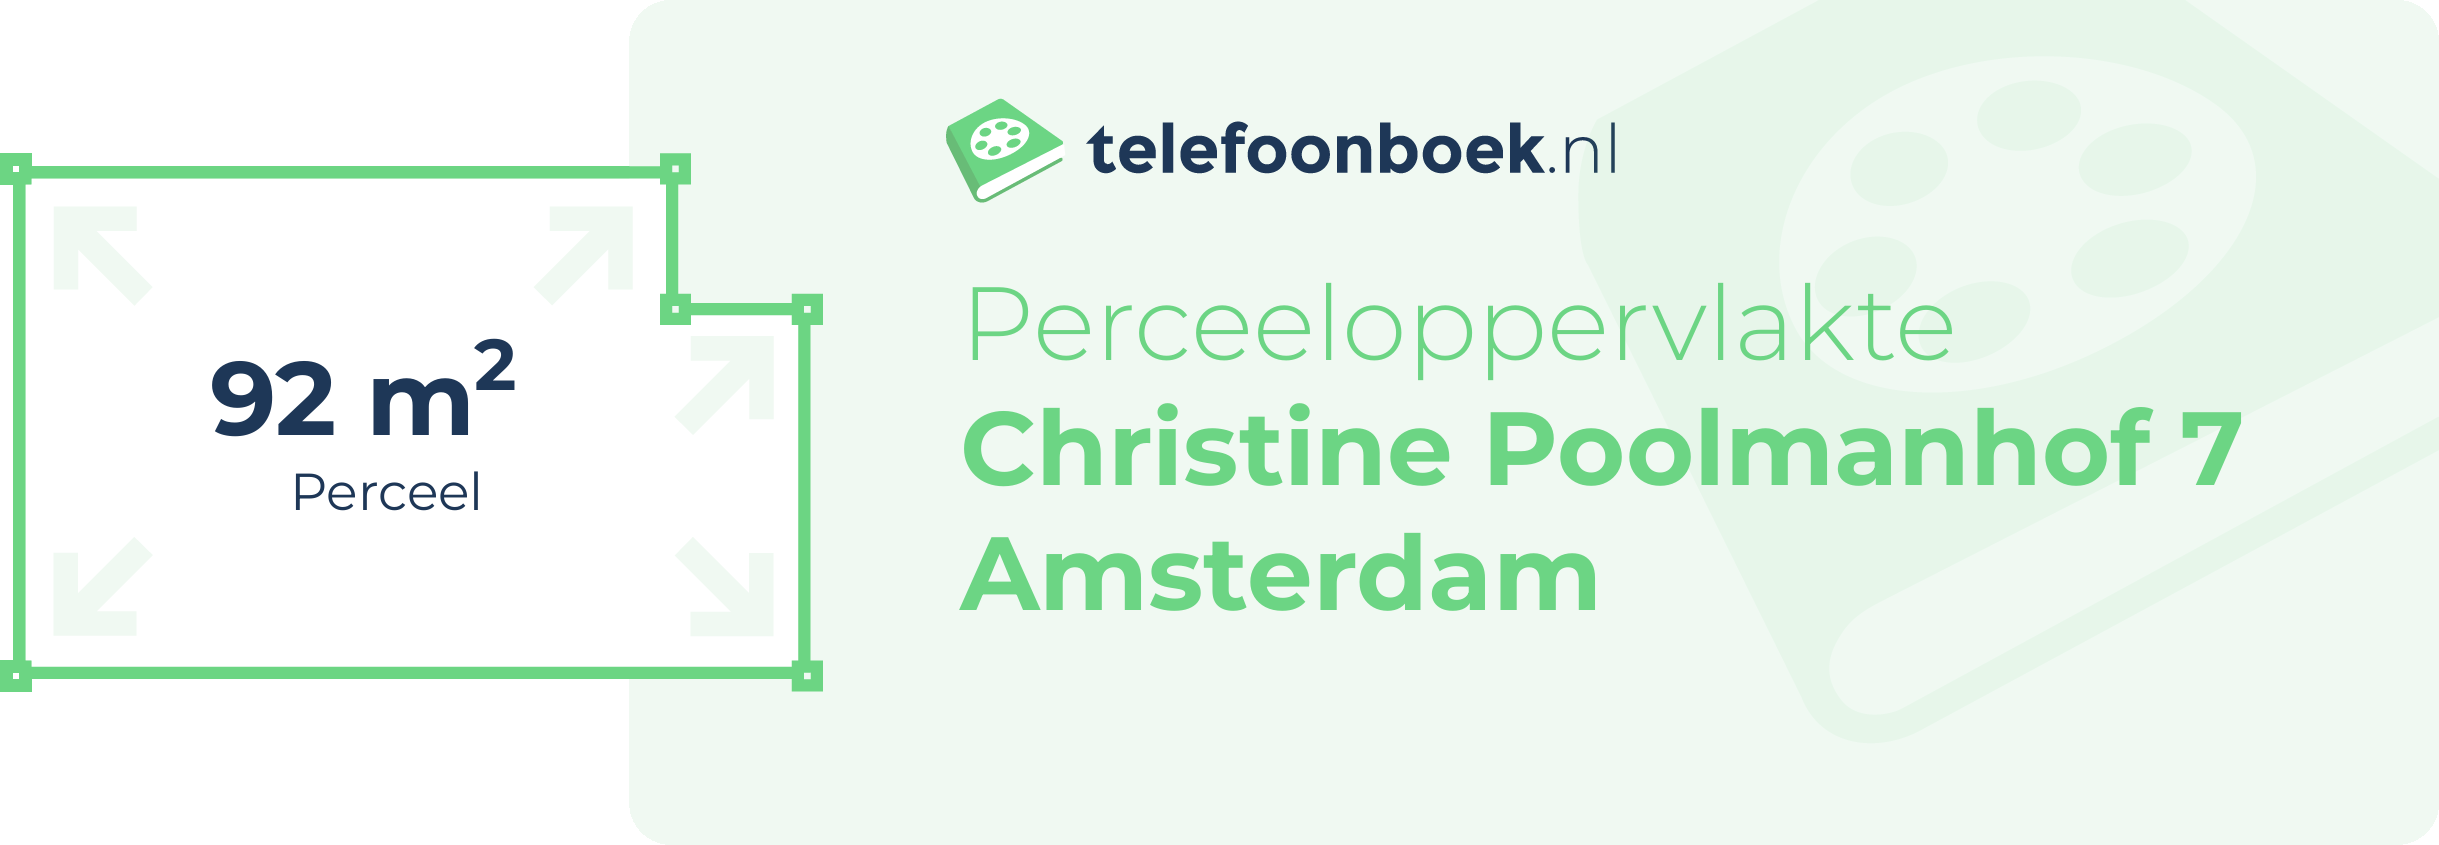 Perceeloppervlakte Christine Poolmanhof 7 Amsterdam